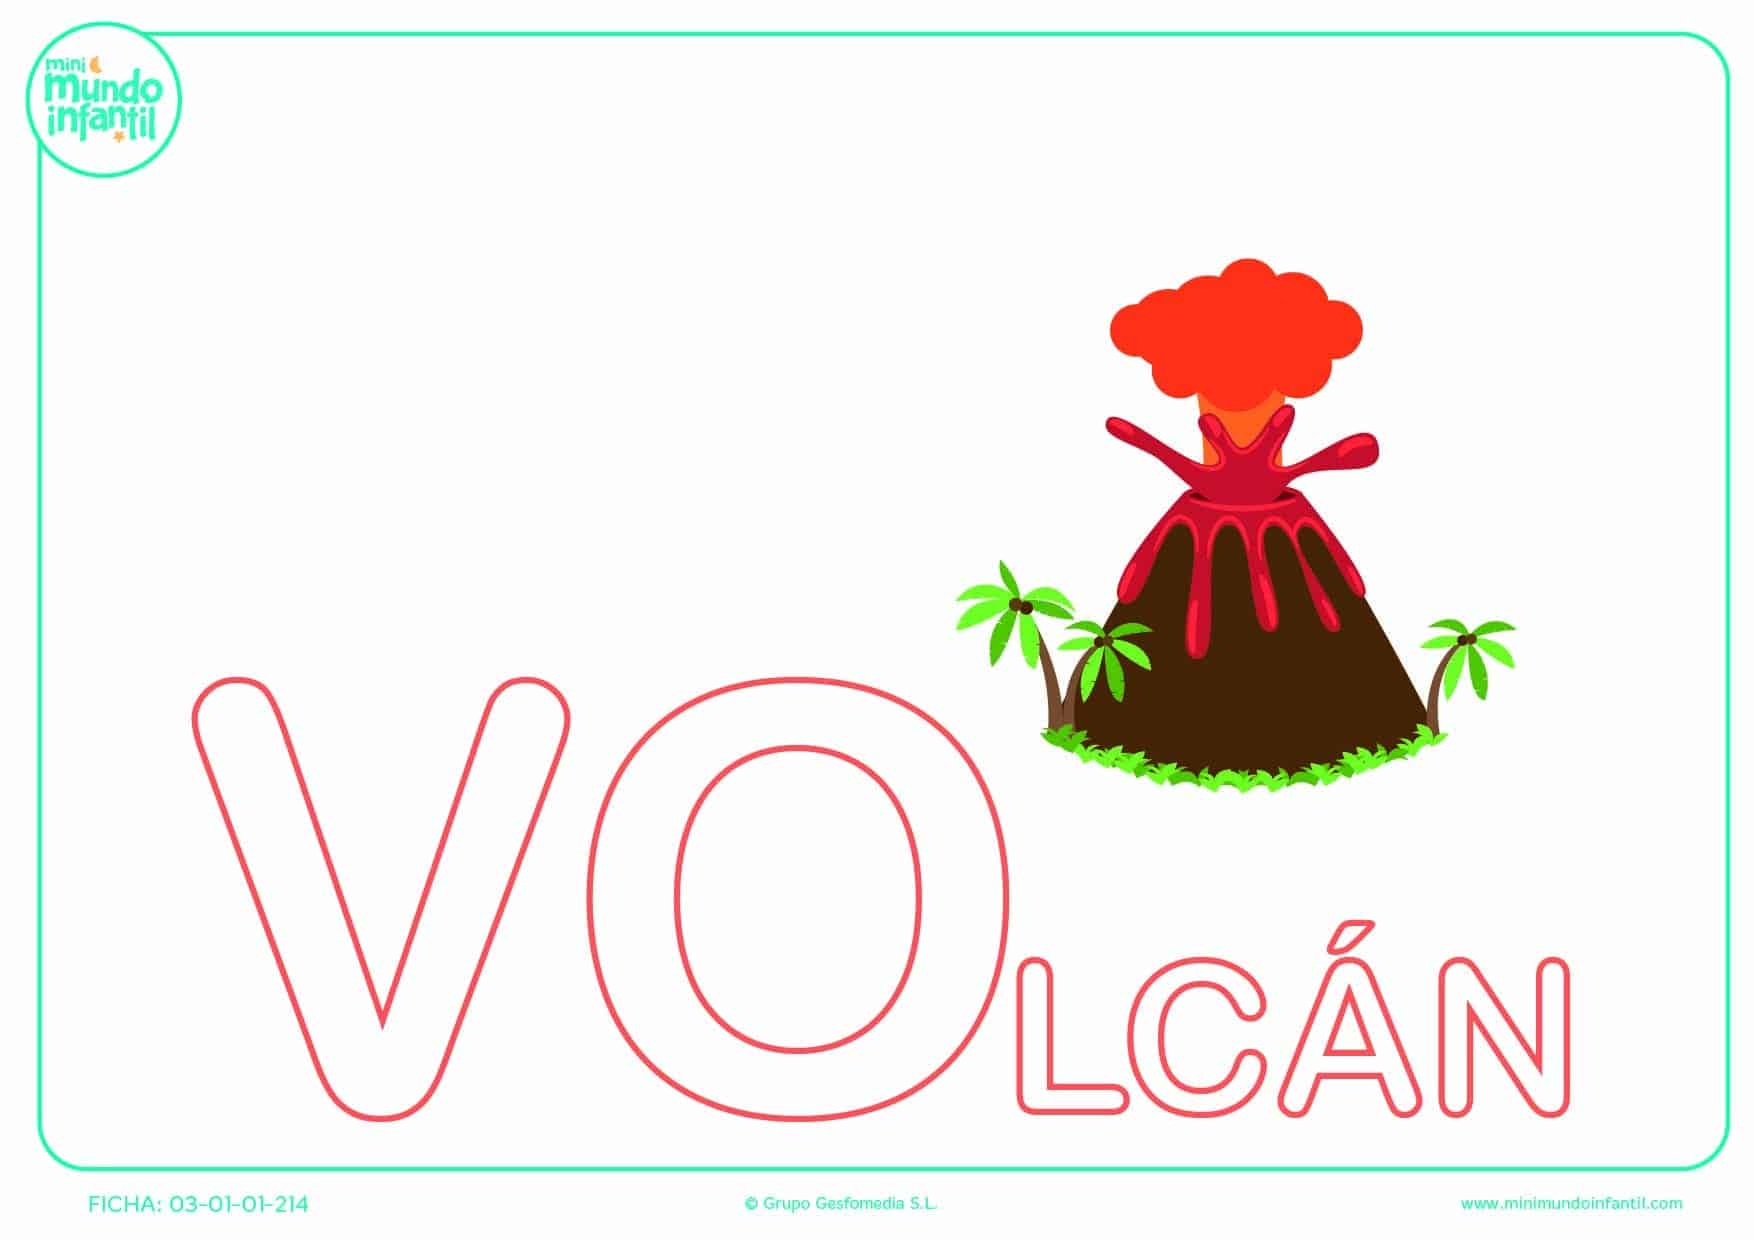 Sílaba VO de volcán en mayúsculas para poner color